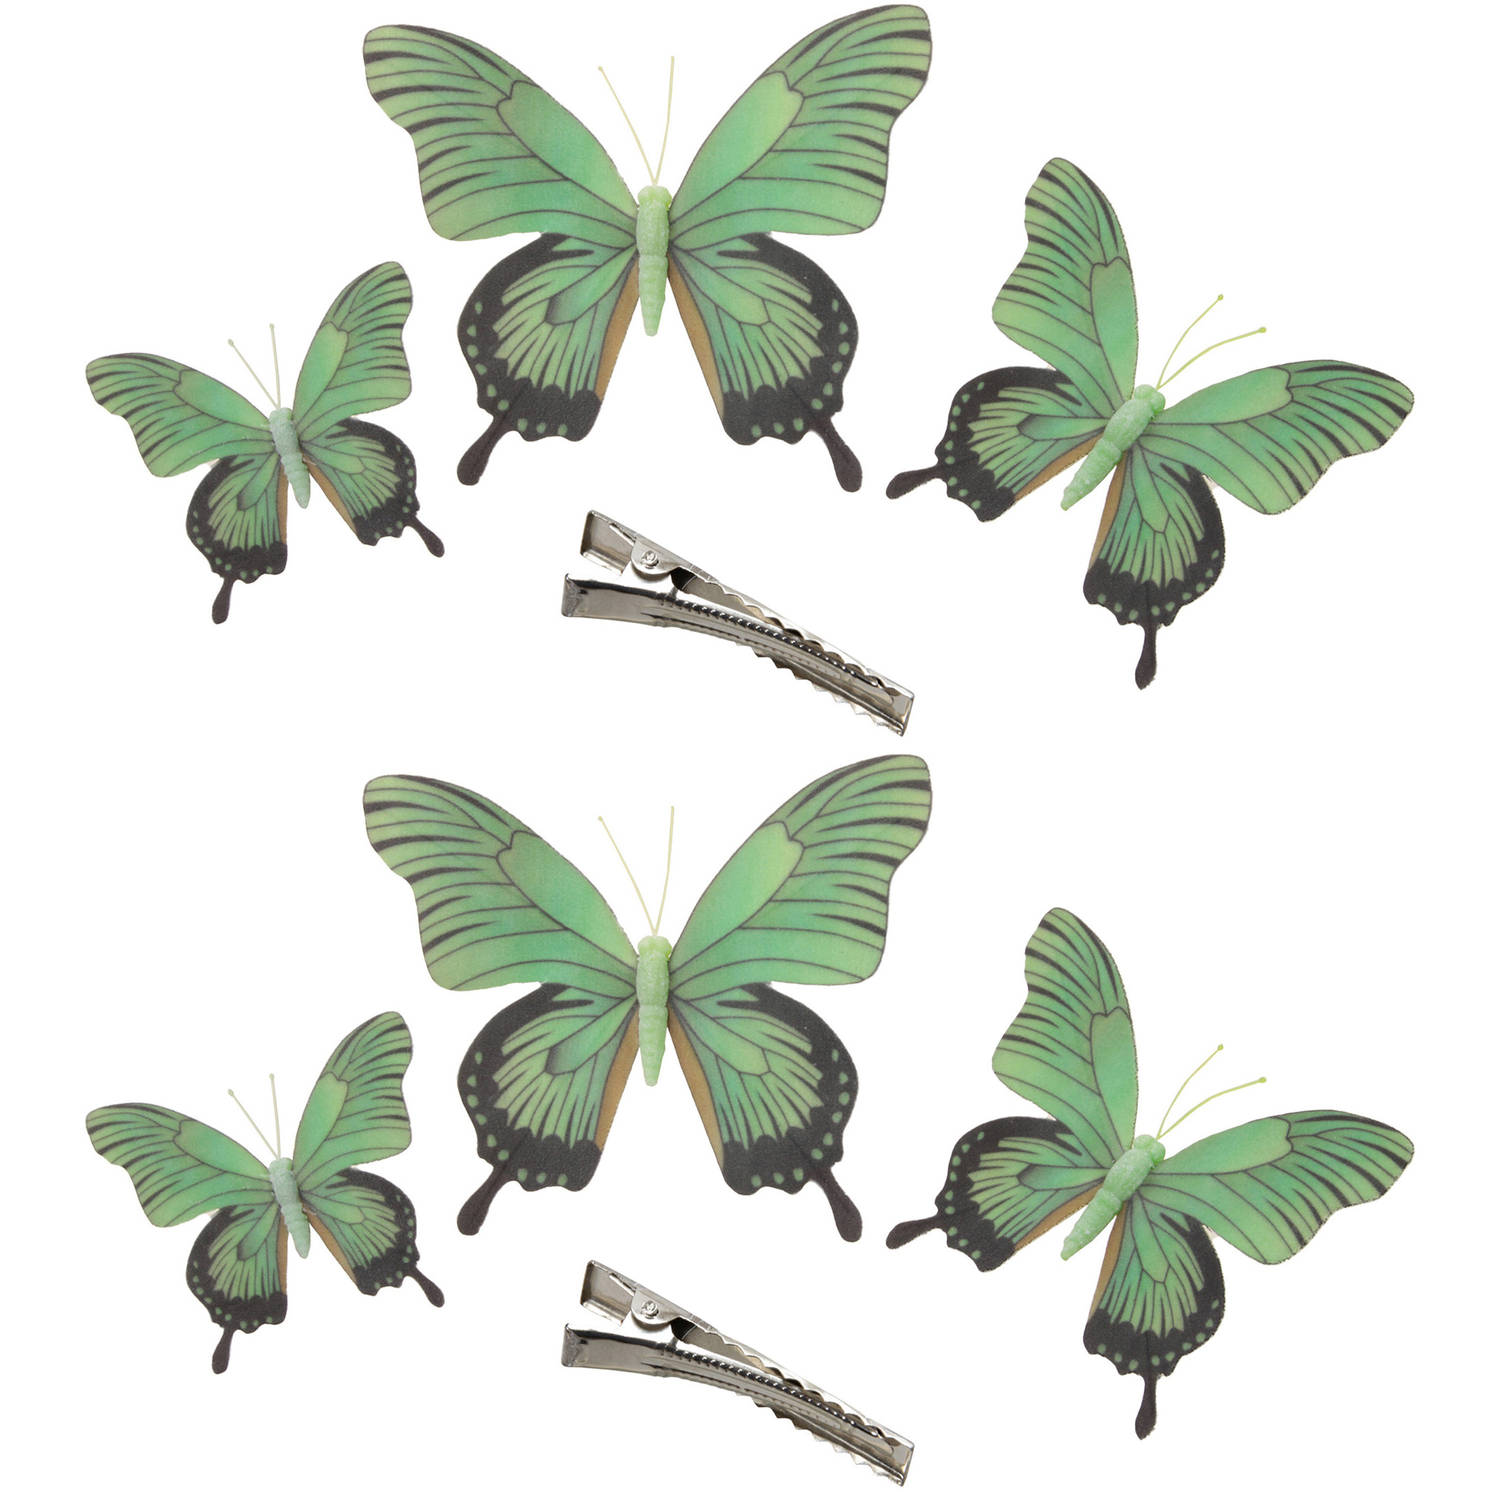 6x Stuks Decoratie Vlinders Op Clip Groen 3 Formaten 12-16-20 Cm Hobbydecoratieobject